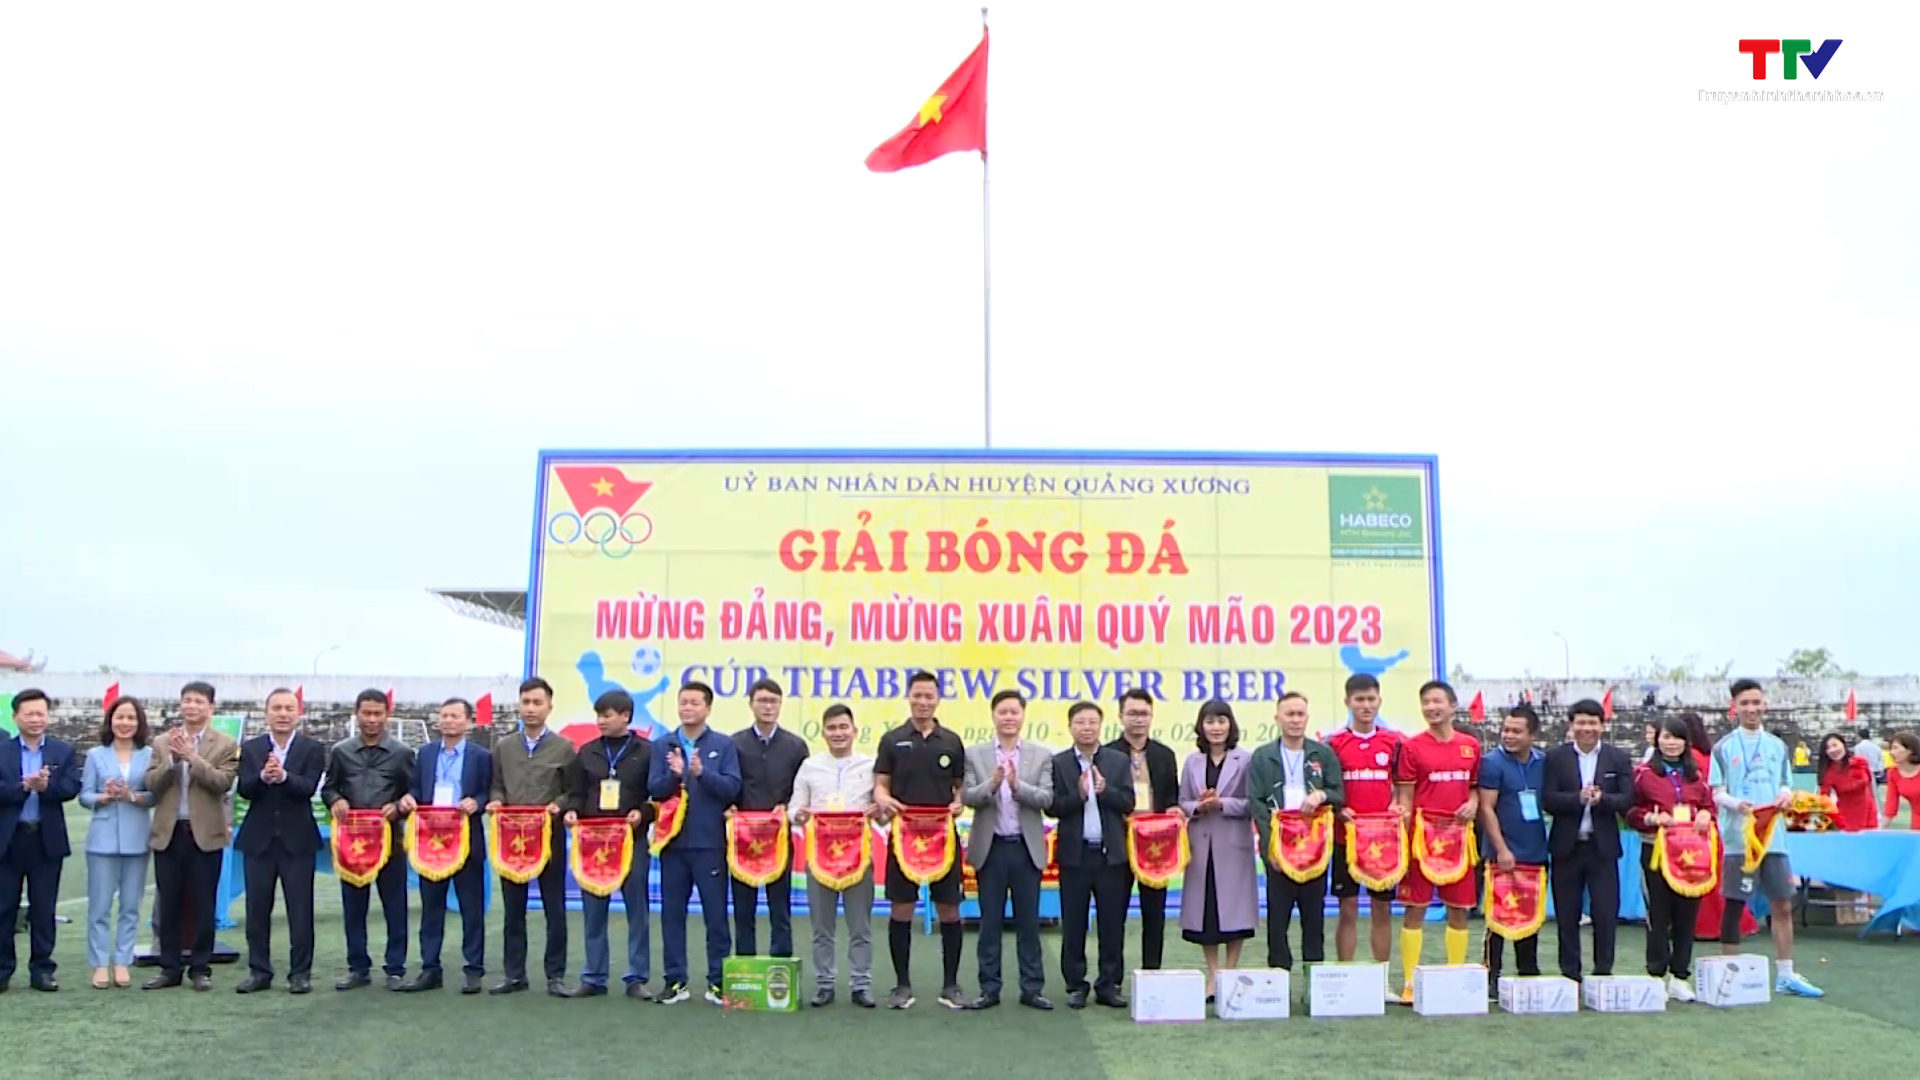 Huyện Quảng Xương tổ chức Giải bóng đá mừng Đảng - mừng Xuân Quý Mão 2023 - Ảnh 2.